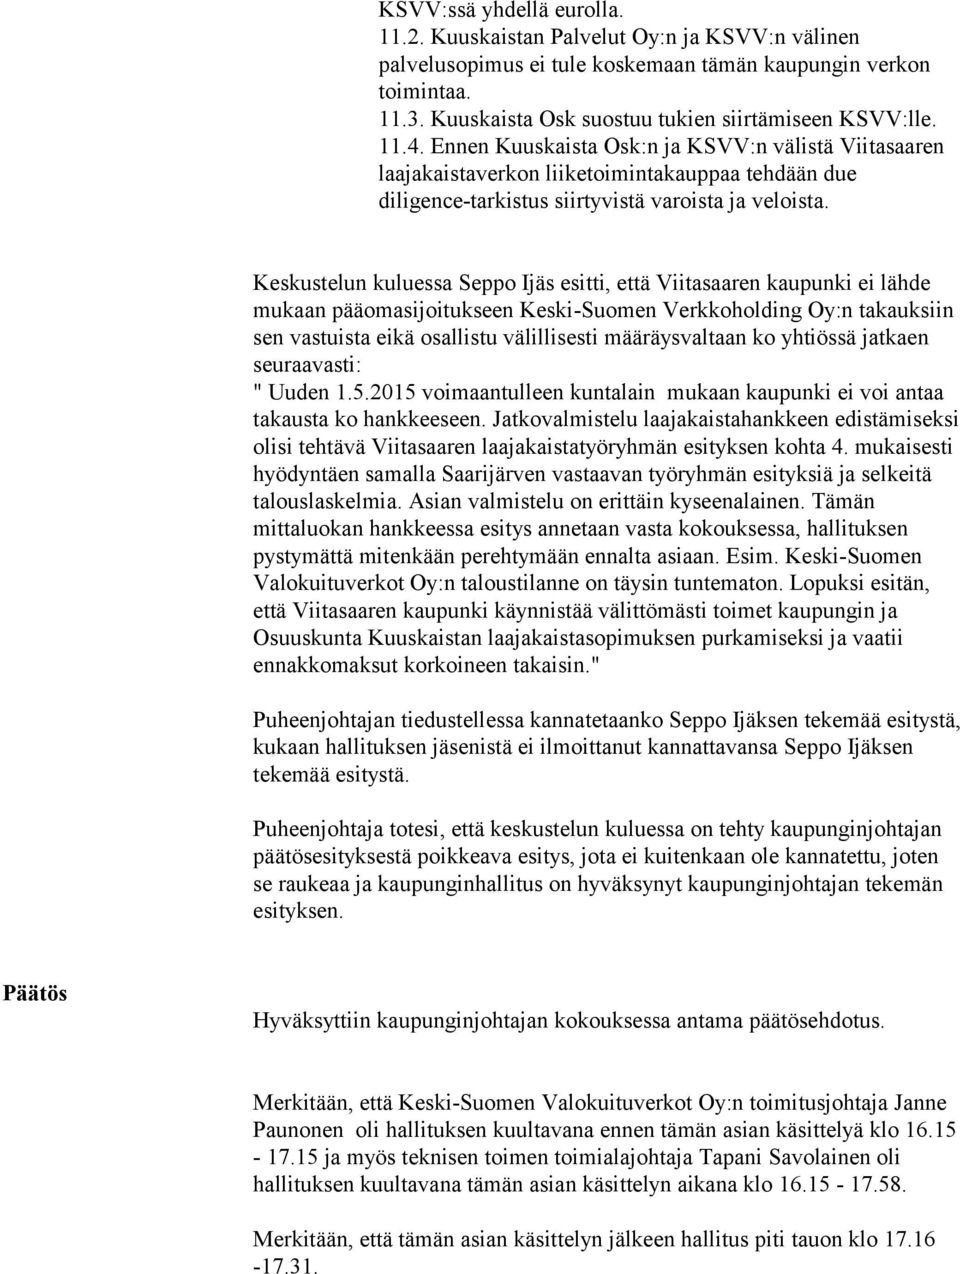 Ennen Kuuskaista Osk:n ja KSVV:n välistä Viitasaaren laajakaistaverkon liiketoimintakauppaa tehdään due diligence-tarkistus siirtyvistä varoista ja veloista.